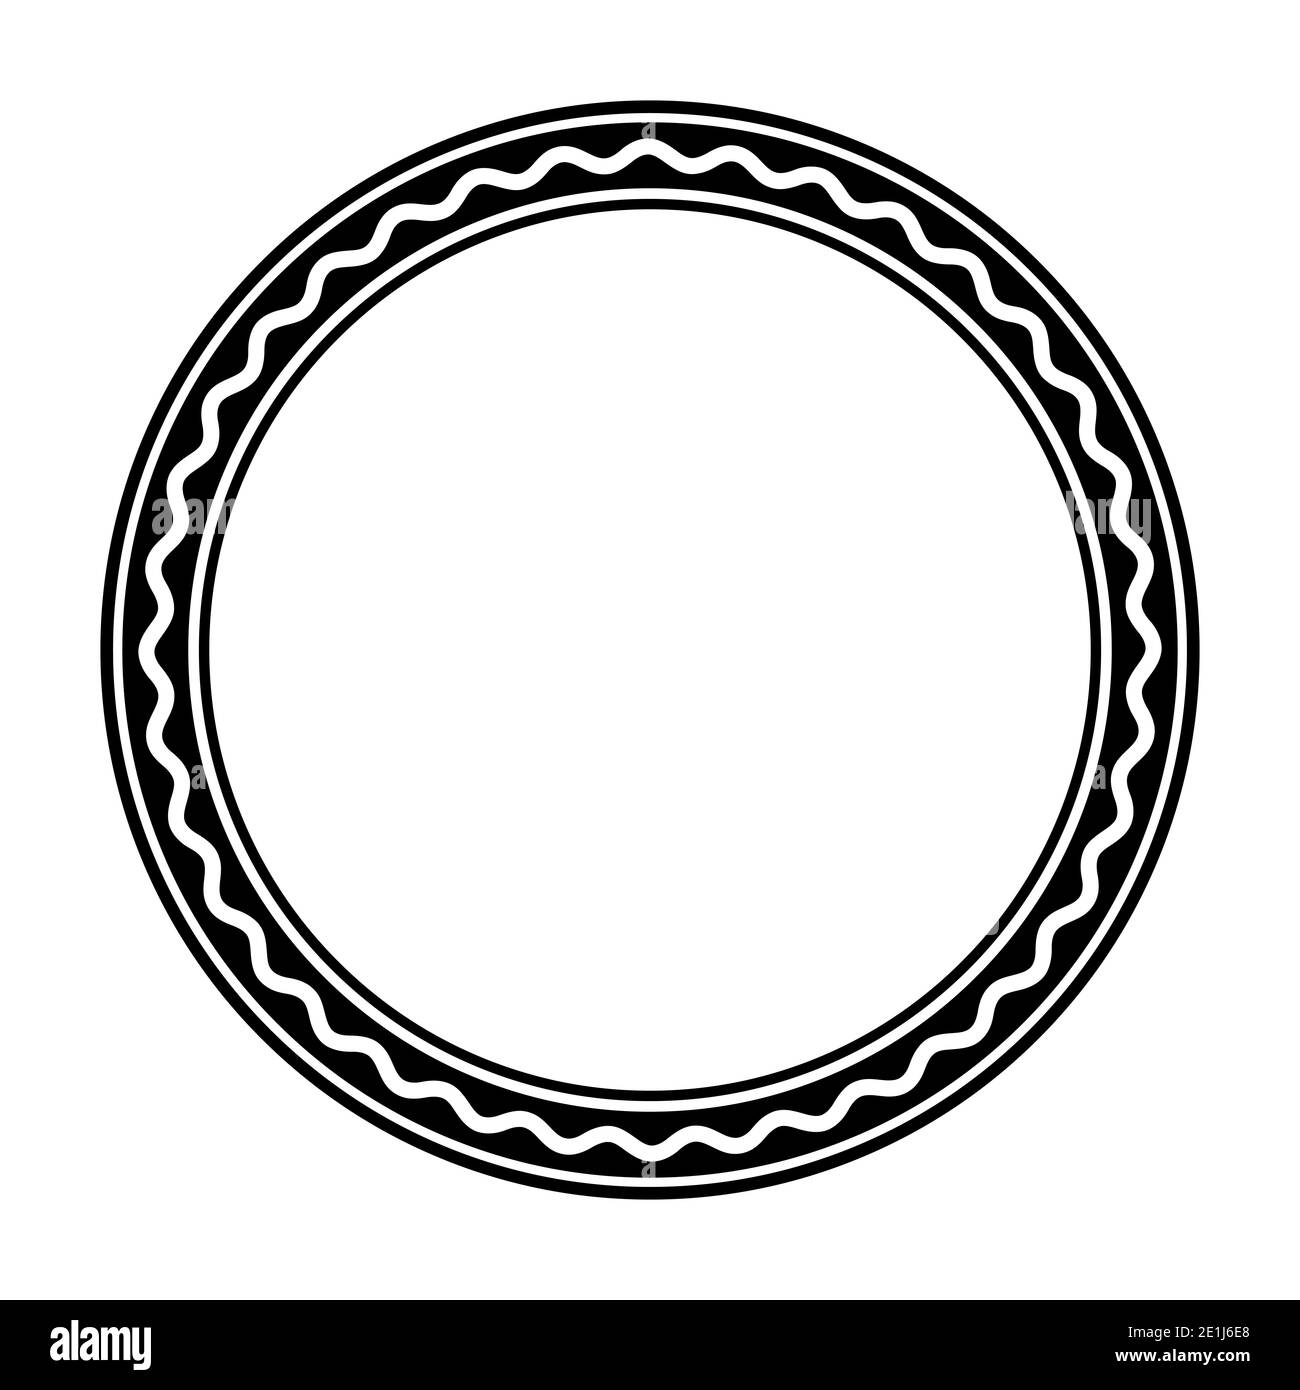 Cadre de cercle noir, avec une ligne ondulée blanche et audacieuse. Le cadre du cercle est constitué de trois cercles et d'une ligne en serpentin. Cadre circulaire et encadrement décoratif. Banque D'Images